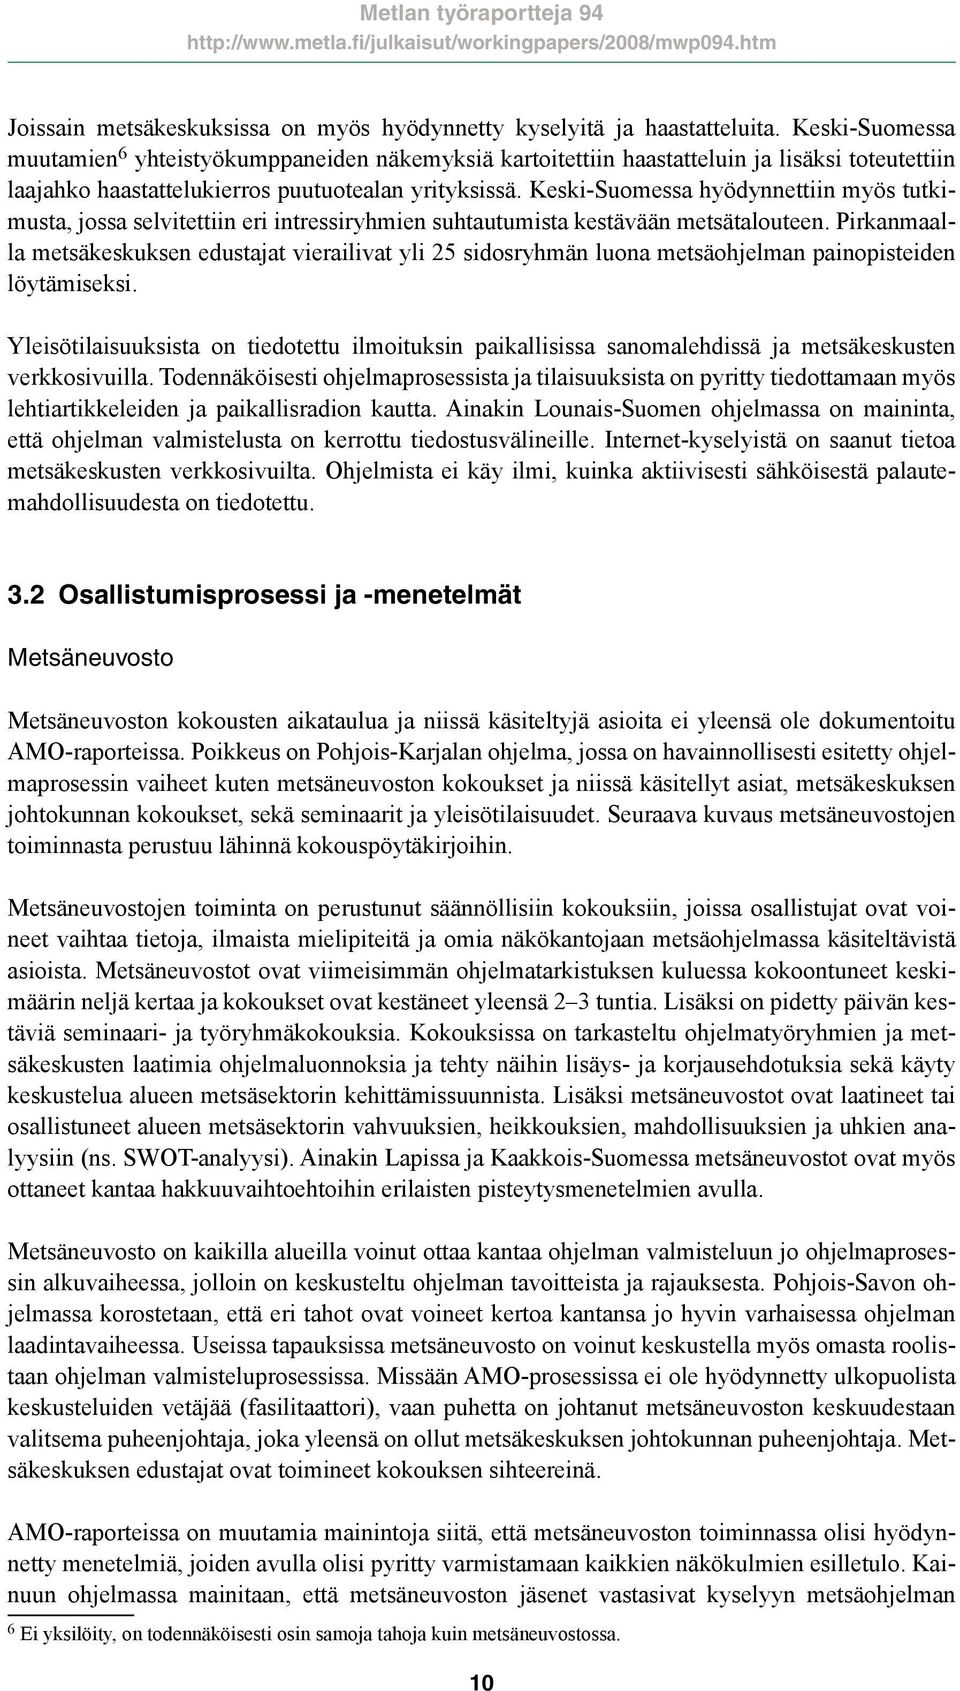 Keski-Suomessa hyödynnettiin myös tutkimusta, jossa selvitettiin eri intressiryhmien suhtautumista kestävään metsätalouteen.